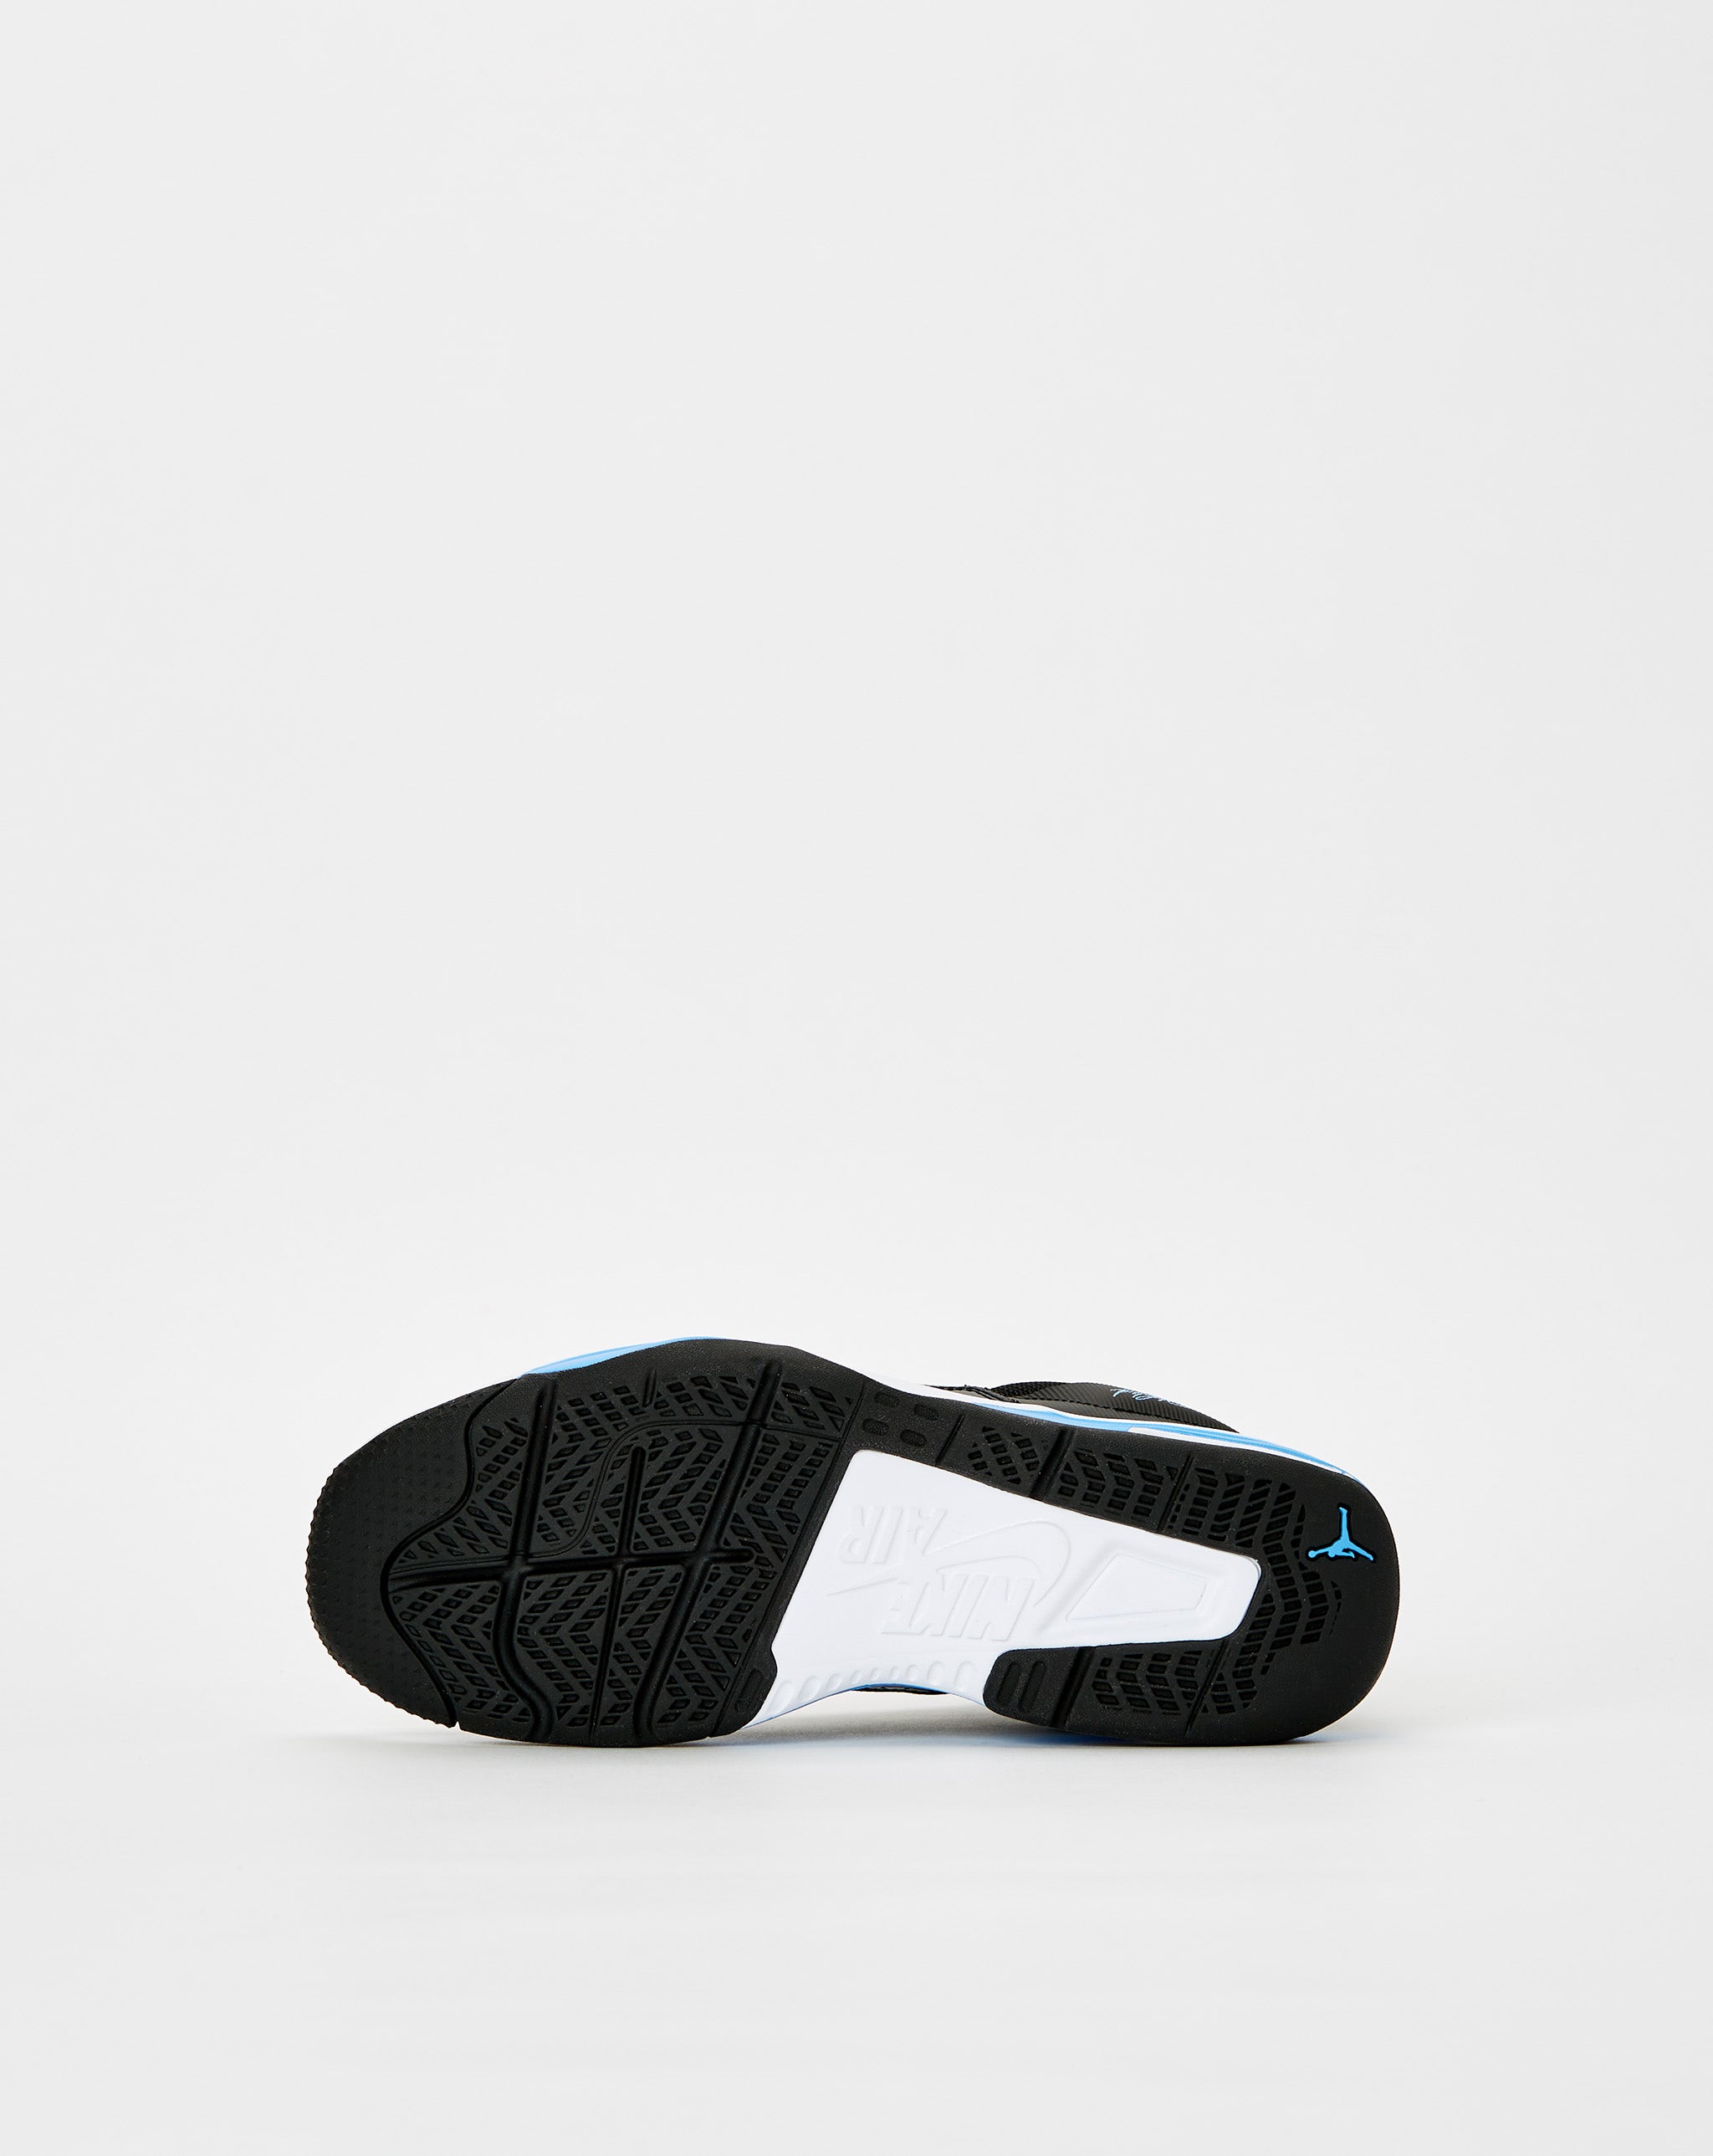 Air Jordan tommy hilfiger shoes  - Cheap Cerbe Jordan outlet